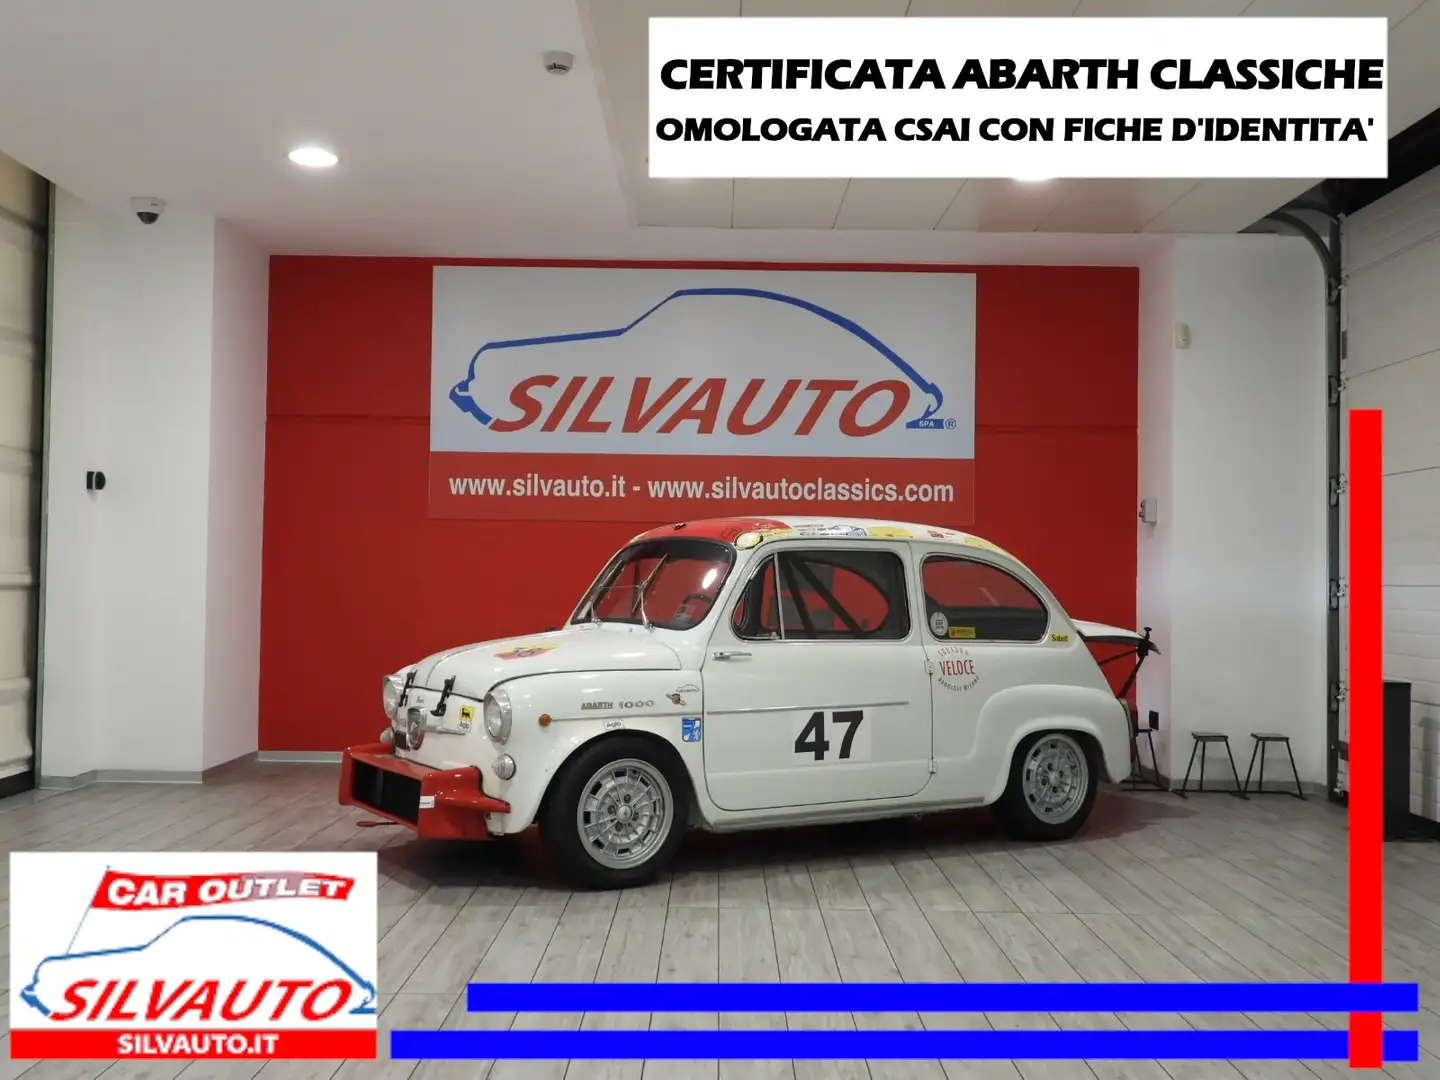 Abarth FIAT 1000 TC –CERTIFICATA ABARTH CLASSICHE(1963) Alb - 1